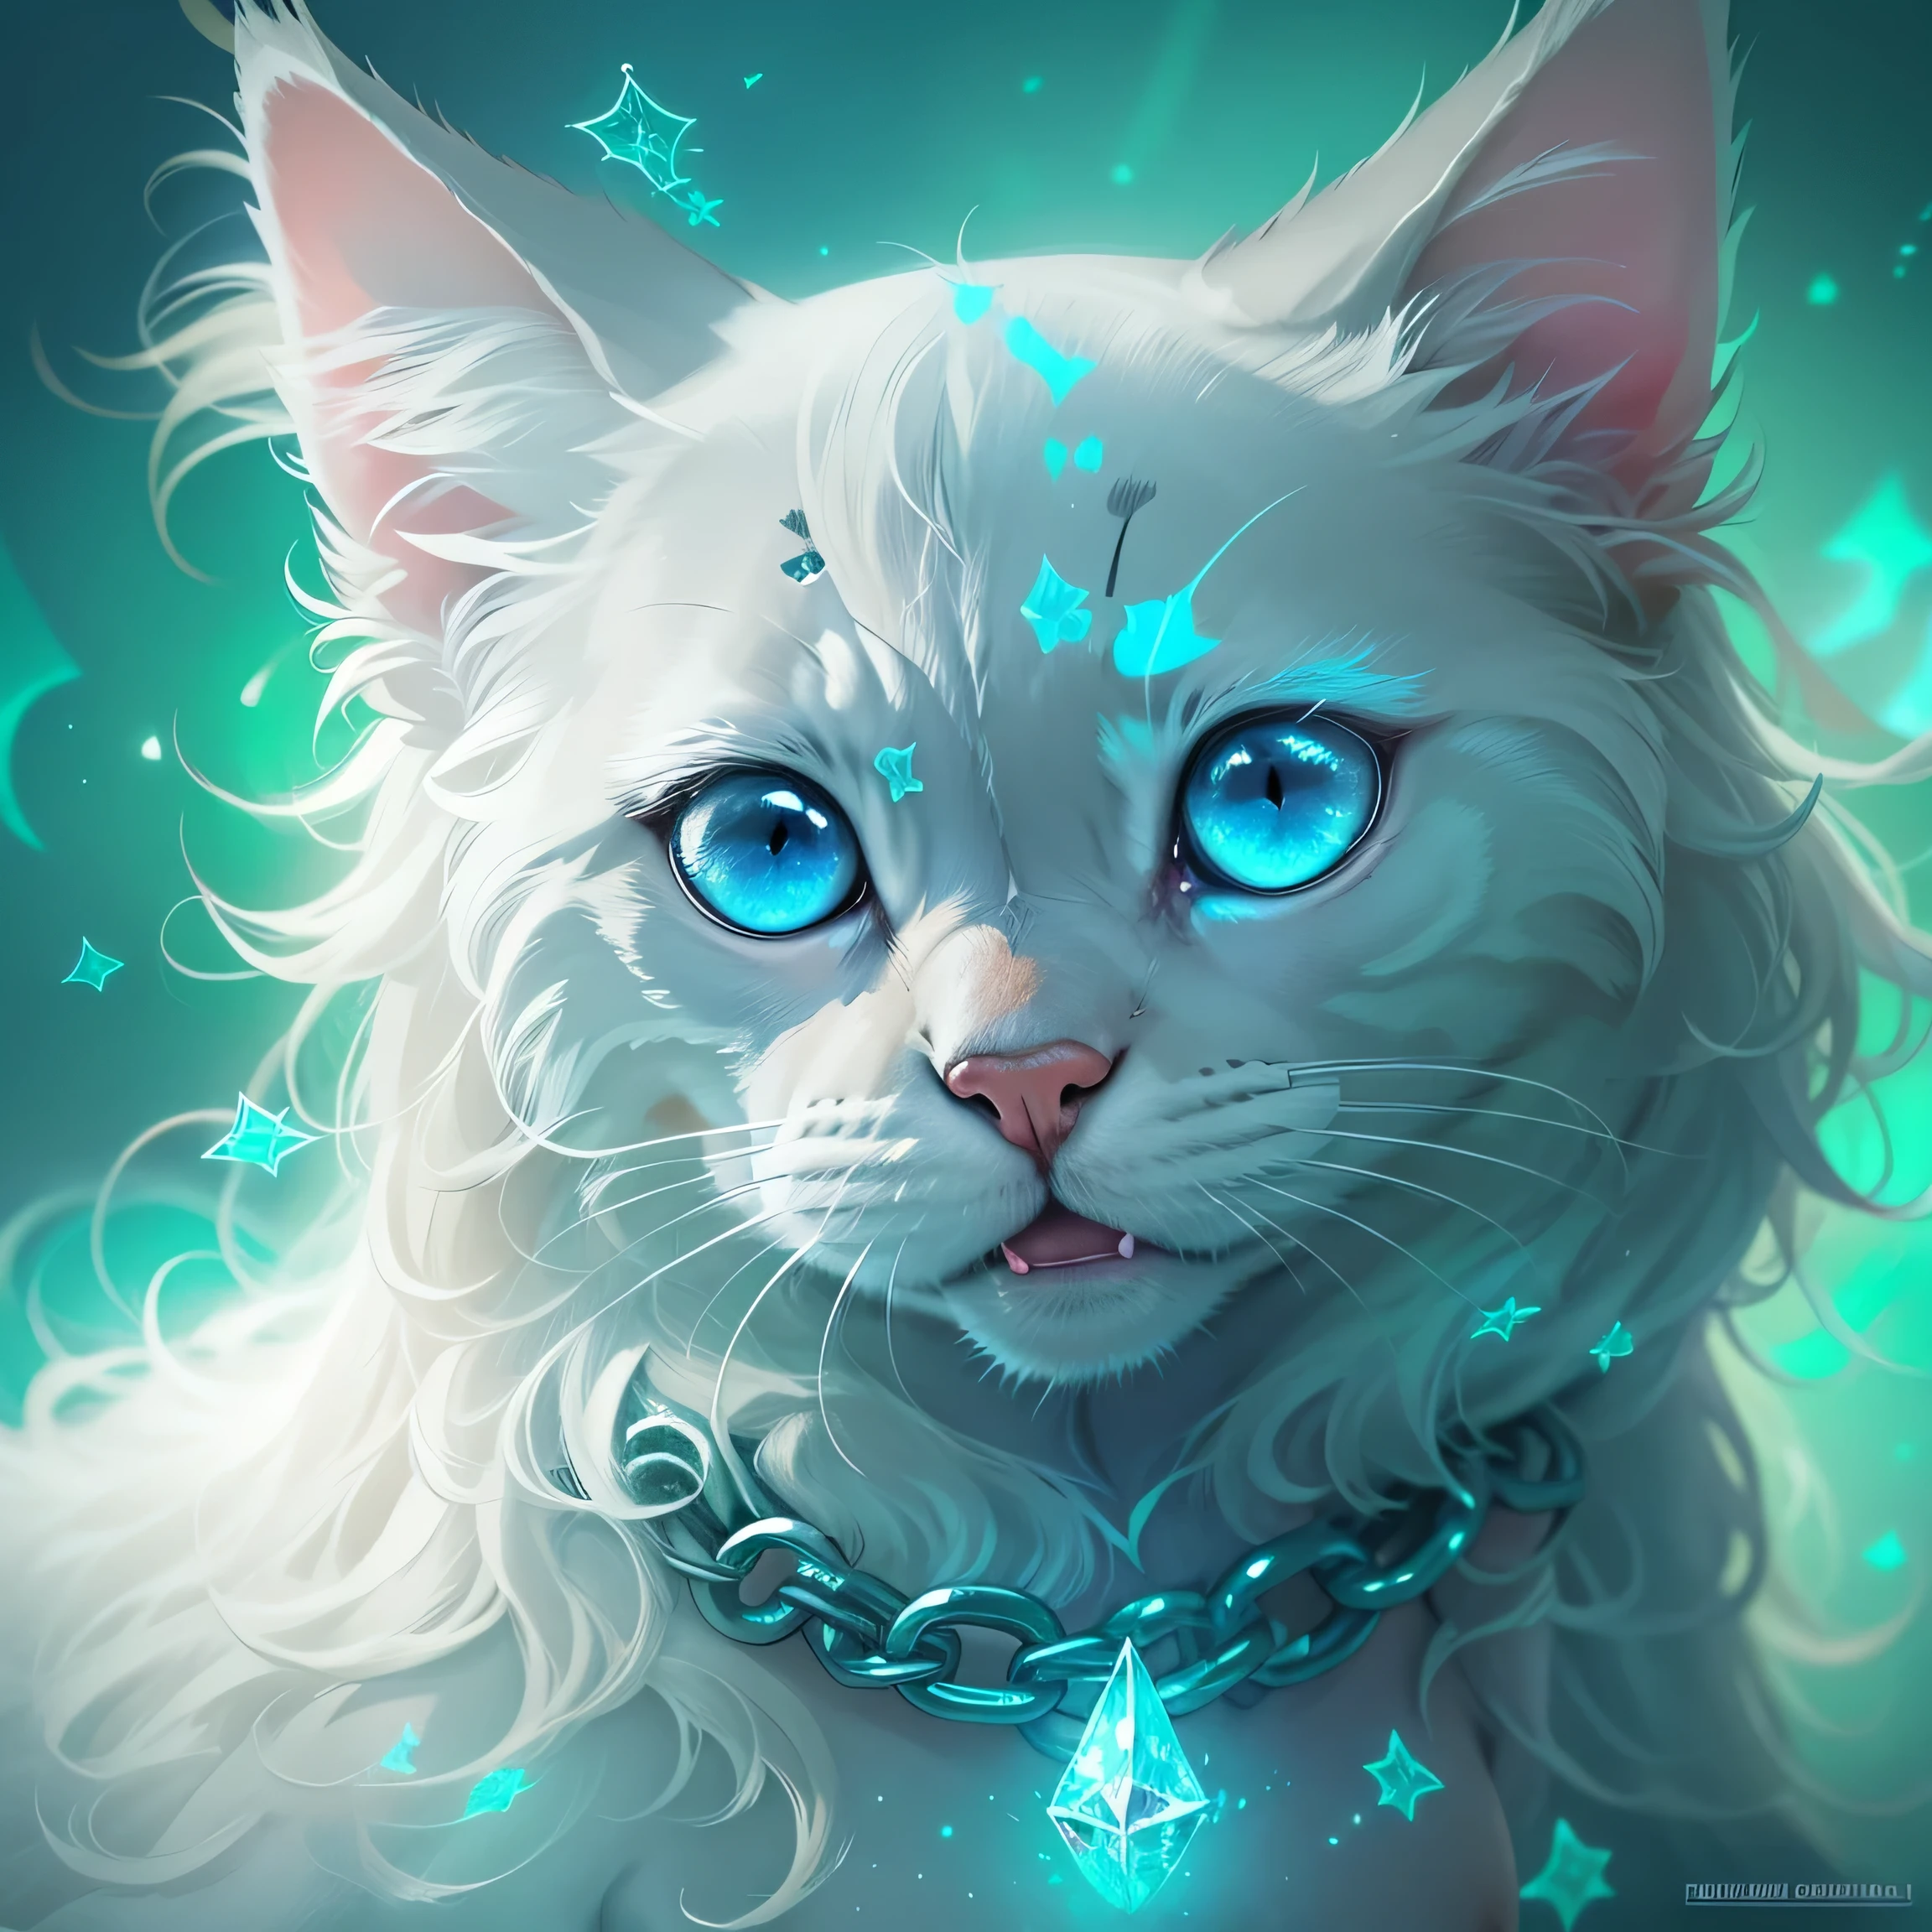 青い目をした首に鎖をつけた猫がいる., デジタルアート by Galen Dara, CGSociety で話題, デジタルアート, 青く輝く目, beautiful 輝く青い目, 青く輝く目, 輝く青い瞳, 輝く青い目, 輝く青い瞳, 青い反射の目, 夢の動物たちのかわいい目, クリスタルブルーアイズ, アイスブルーアイズ